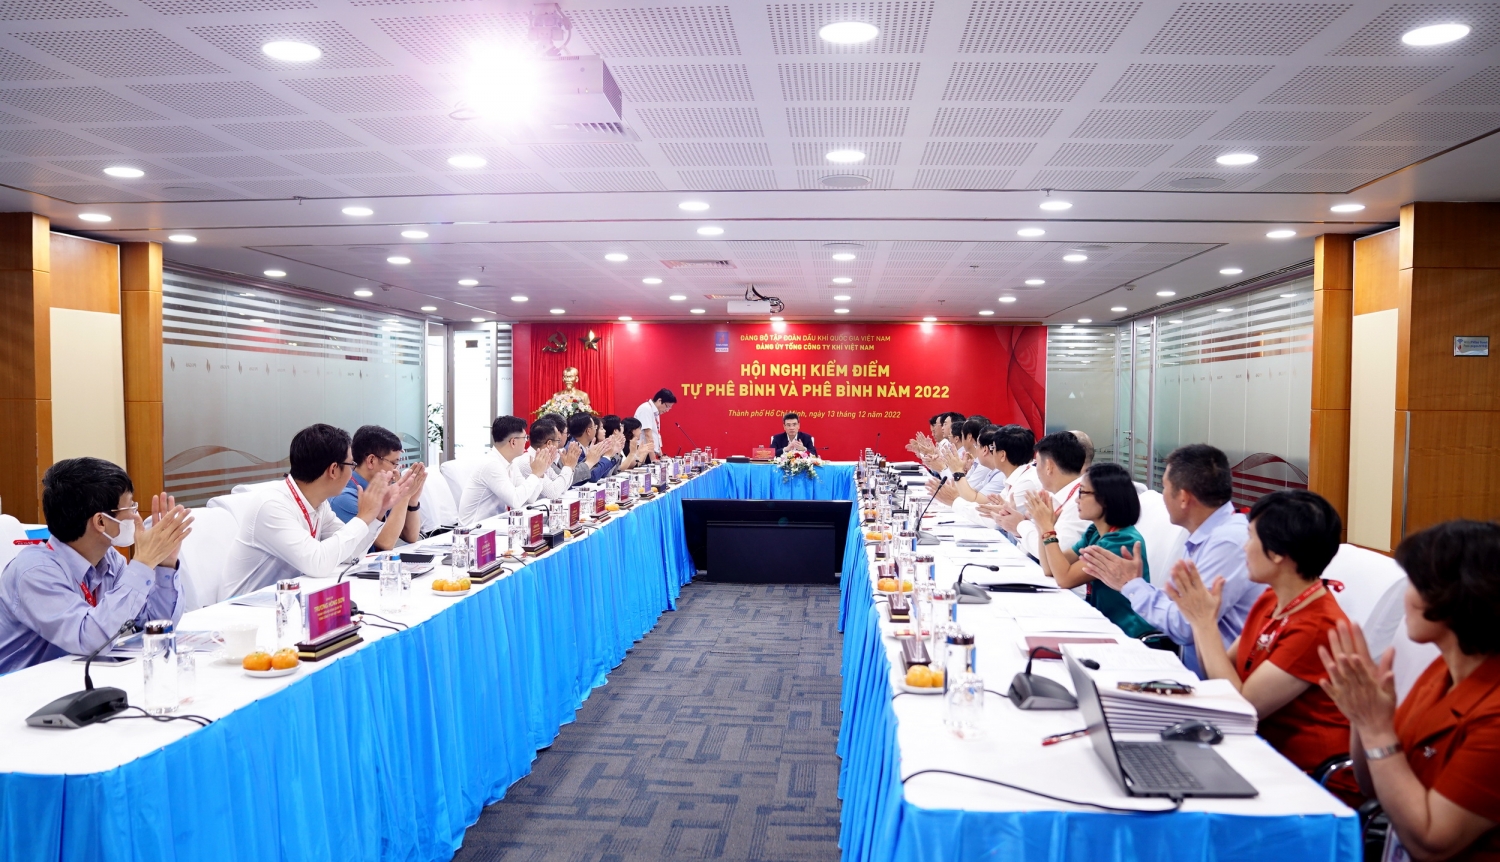 Hội nghị kiểm điểm, tự phê bình và phê bình năm 2022 do Đảng ủy Tổng công ty Khí Việt Nam tổ chức